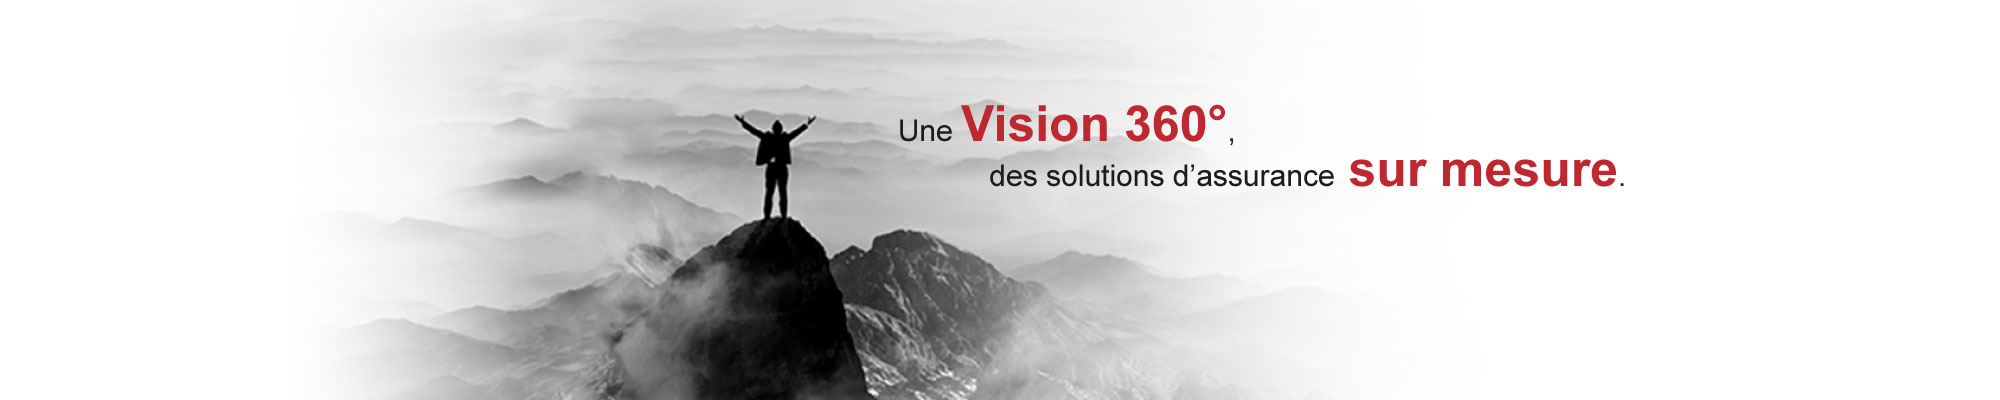 Une Vision 360 degrés, des solutions d'assurance sur mesure.